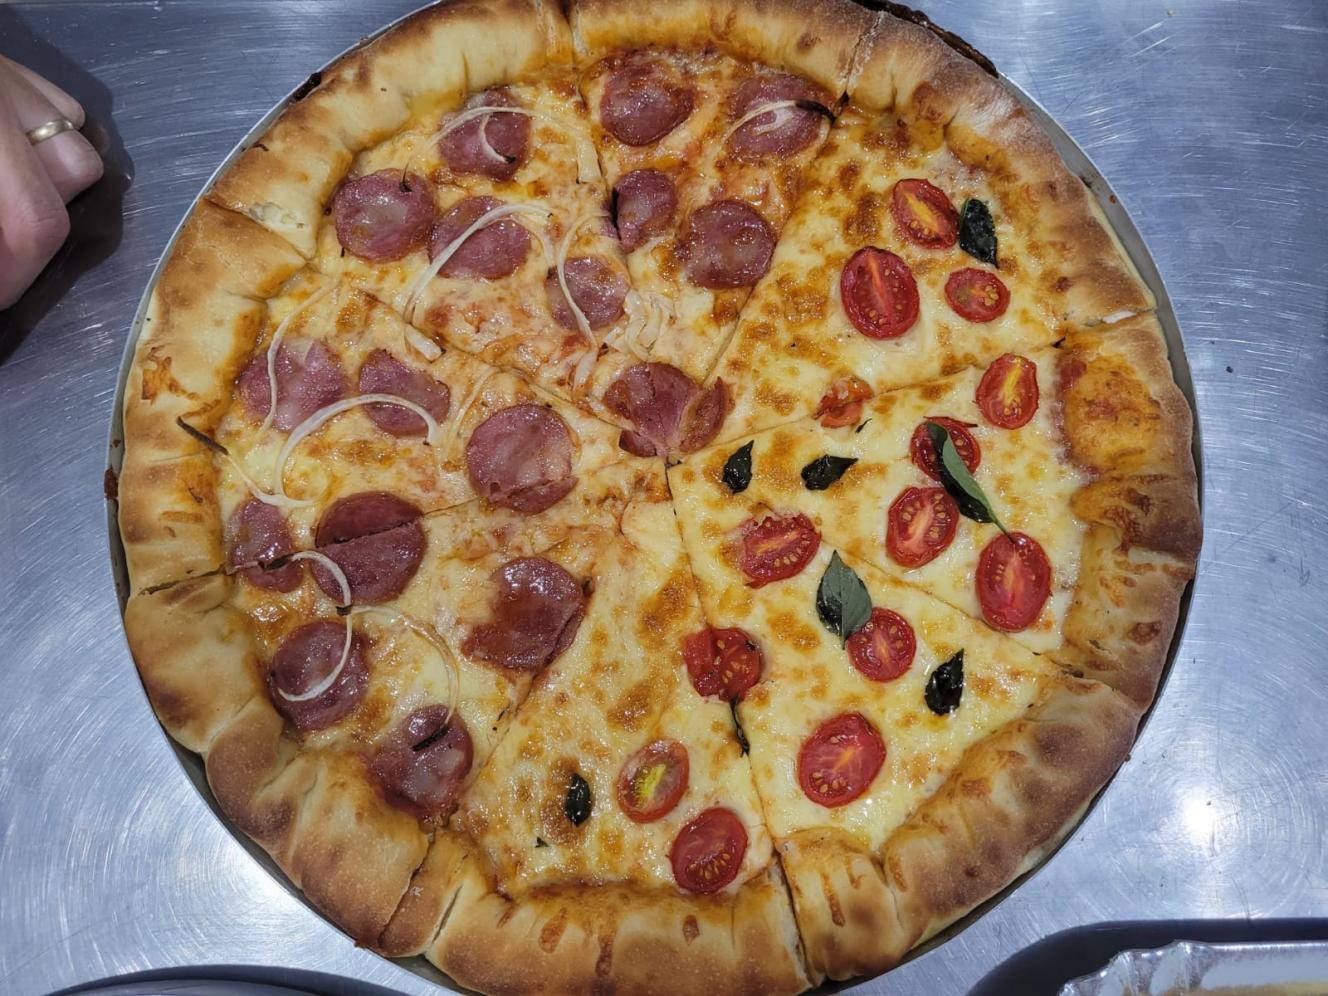 Novas turmas iniciam Curso de Fabricação de Pizzas e Salgados em Cordeirópolis